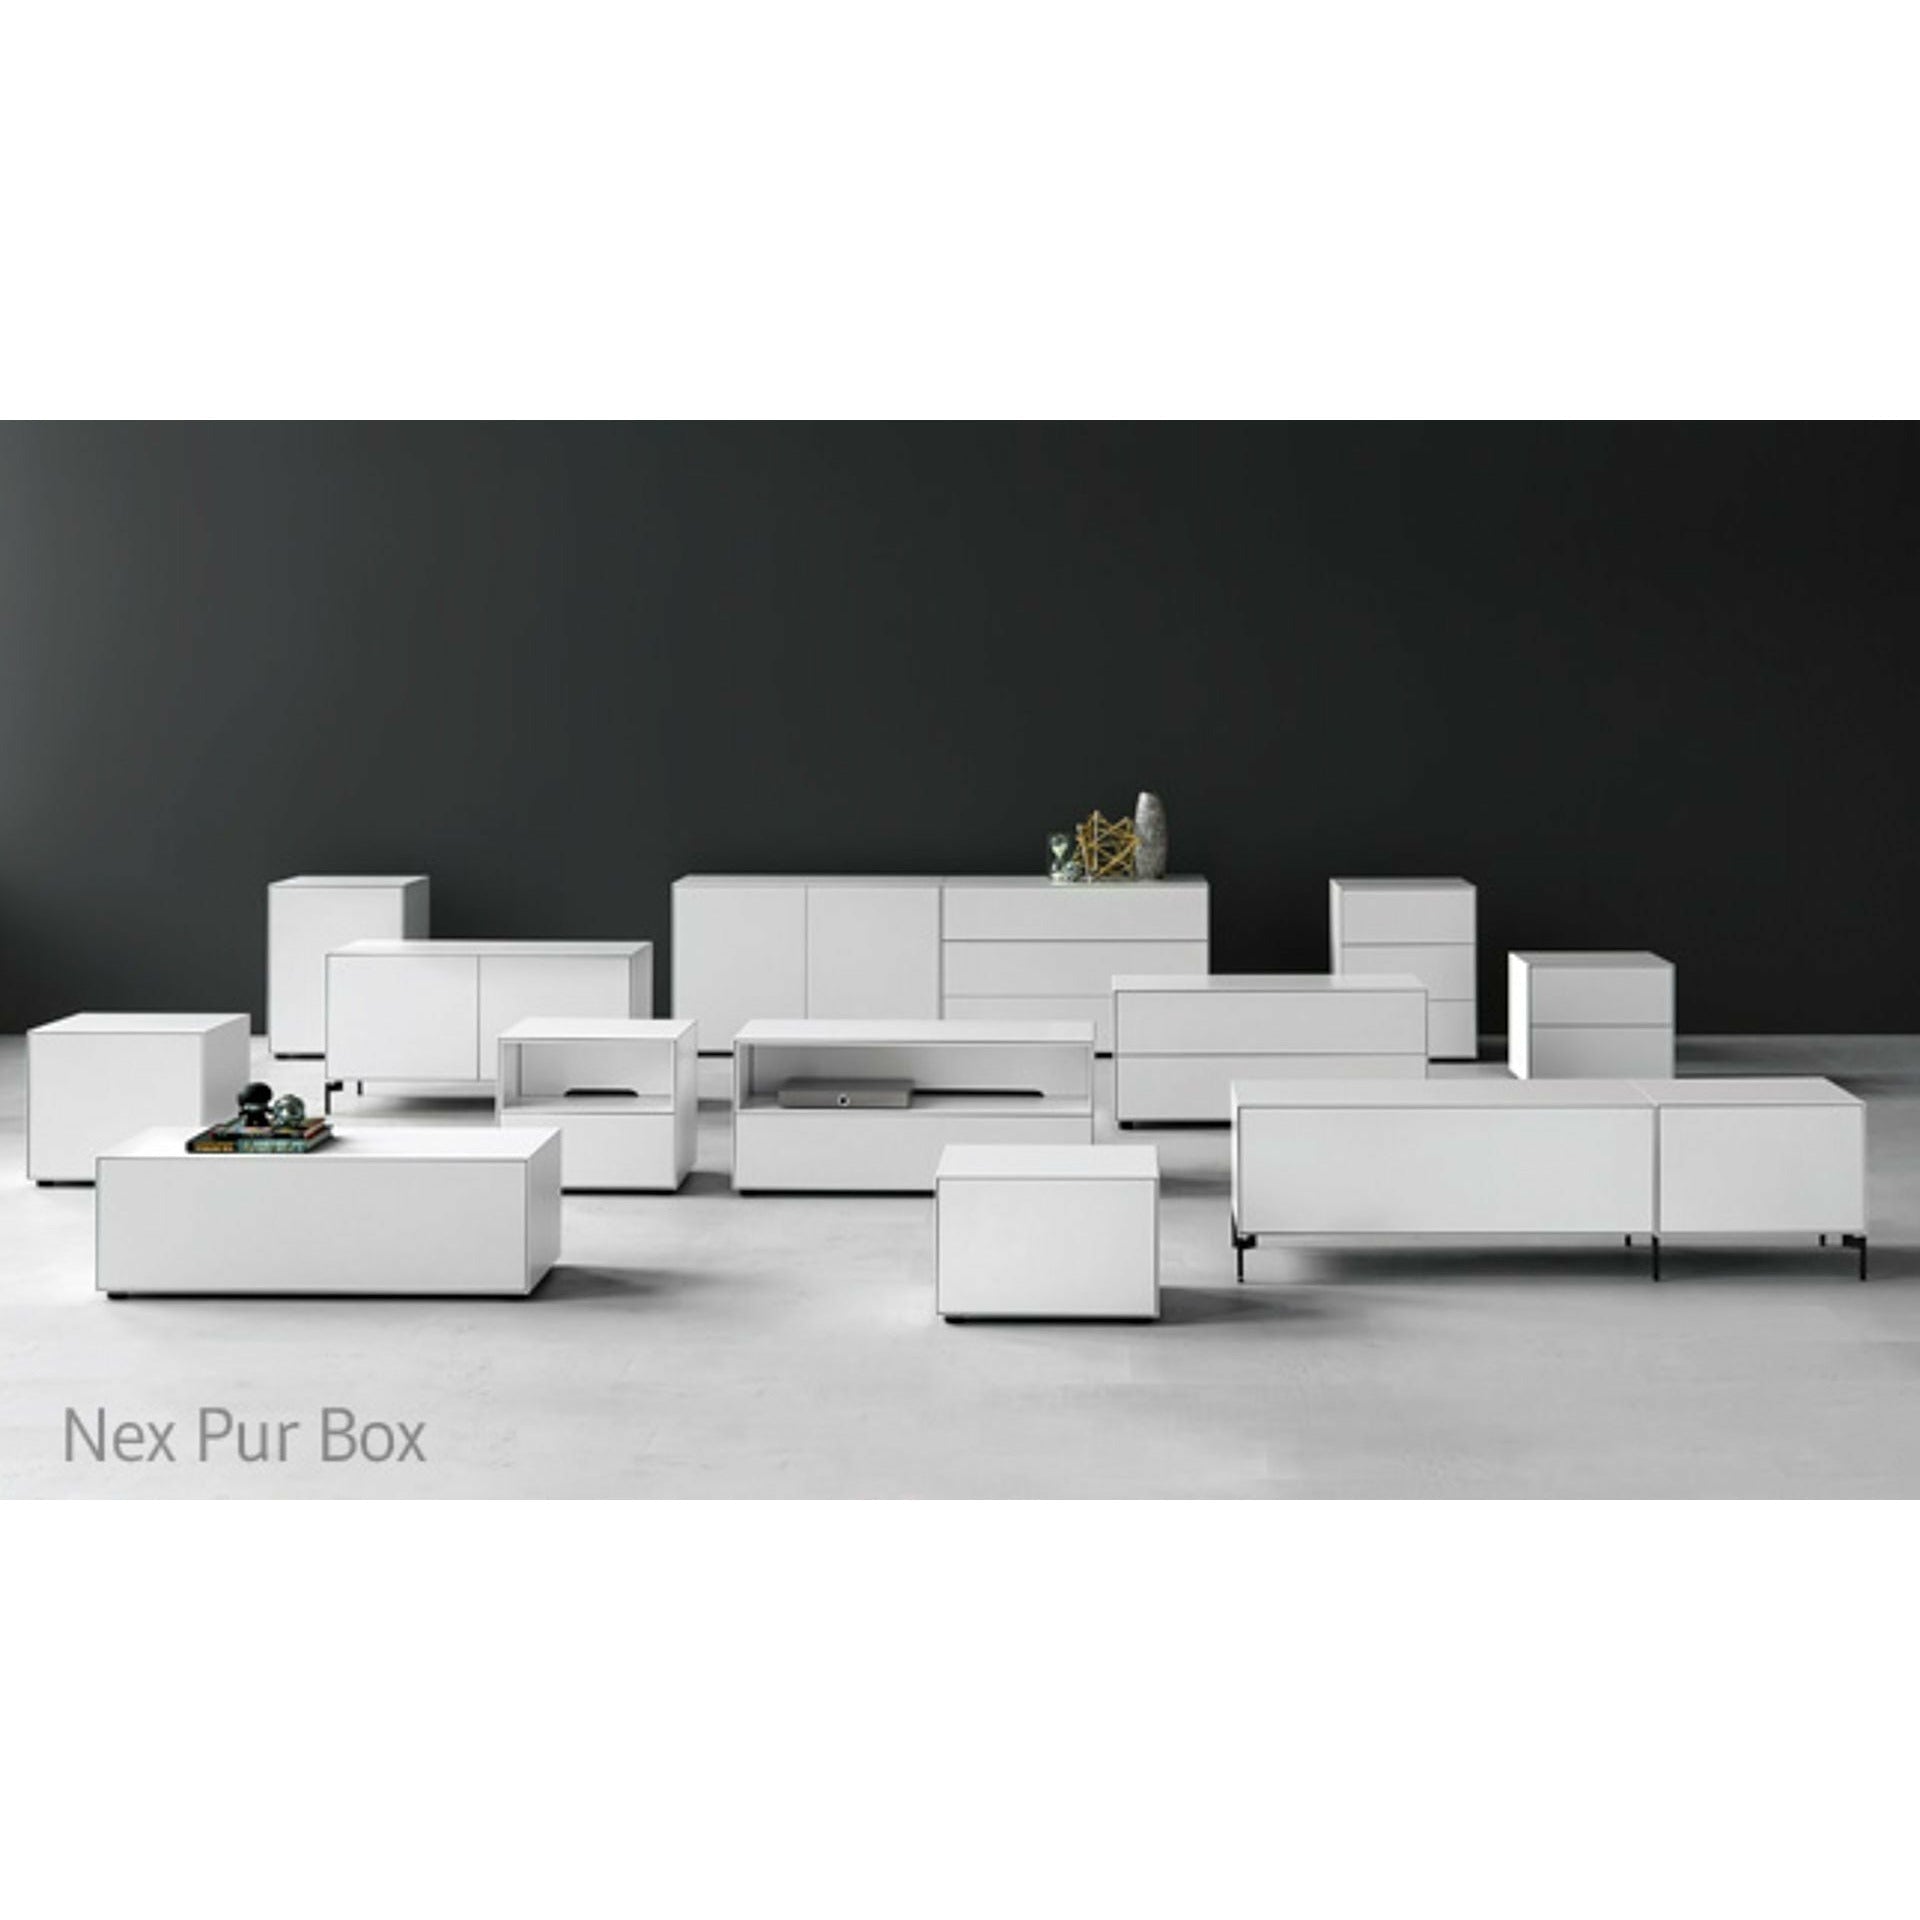 Piure NEX PUR BOX PORTE HX W 50x120 cm, 1 étagère